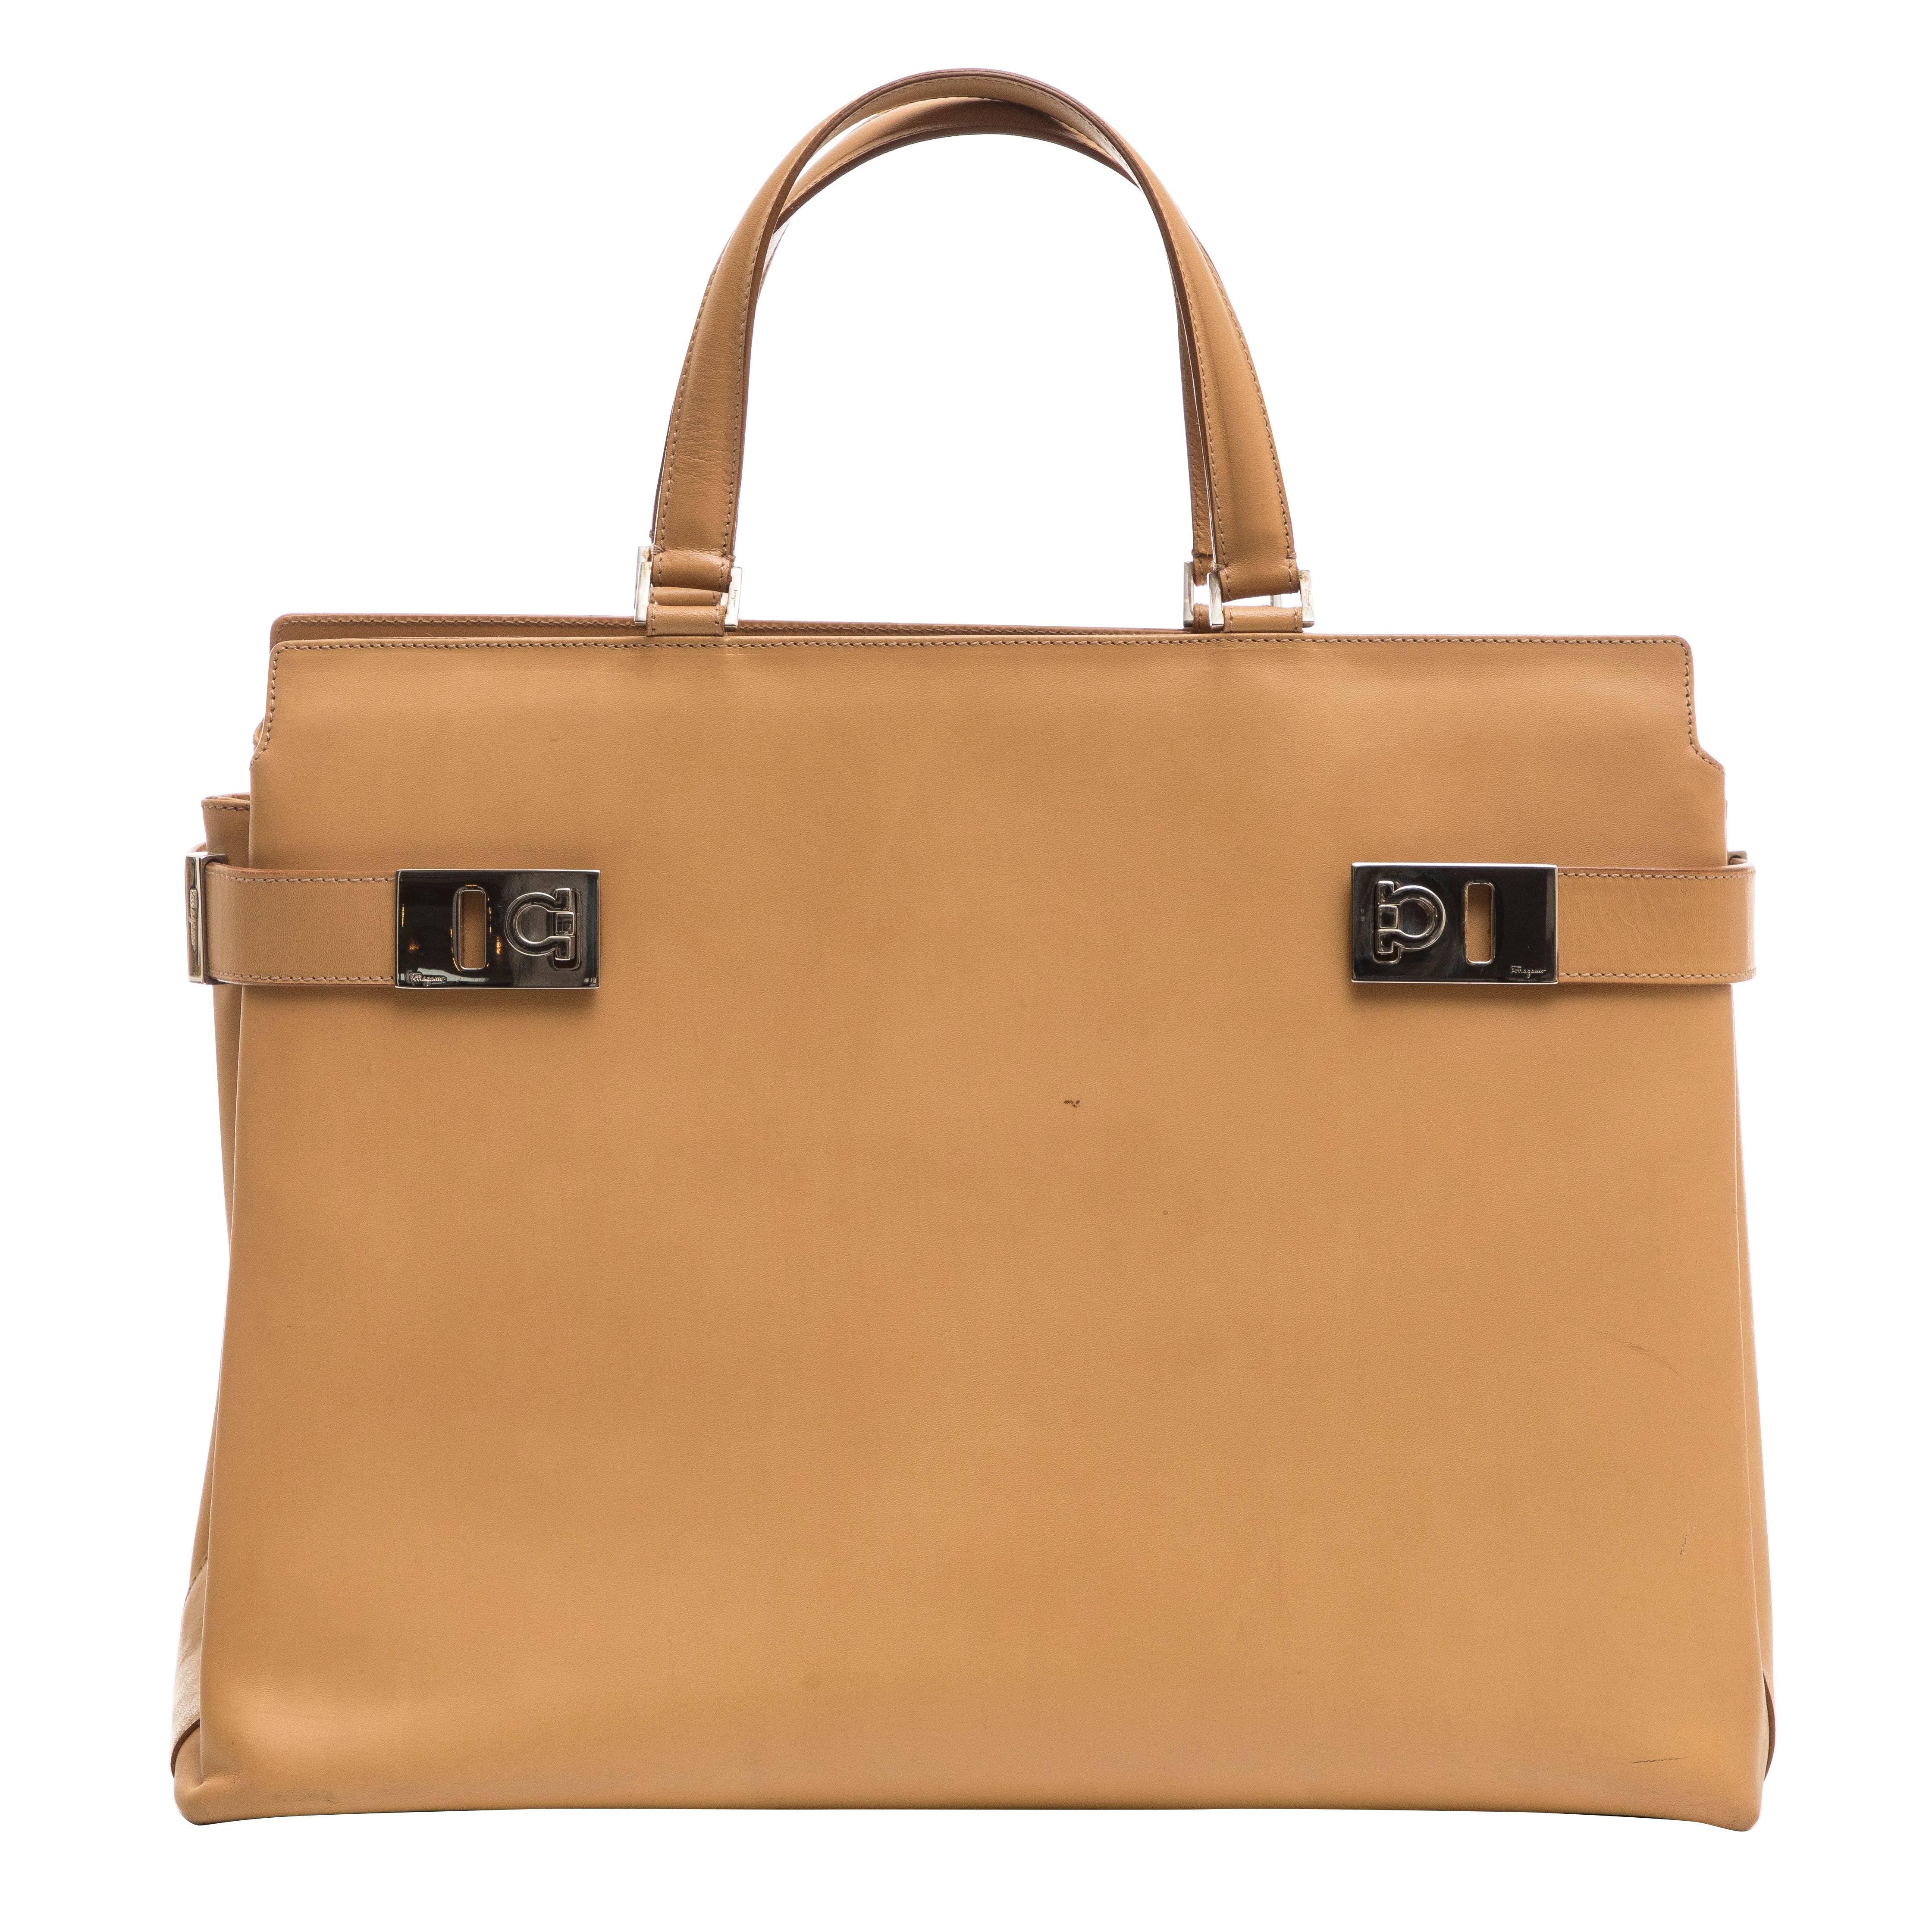 Salvatore Ferragamo Large Butterscotch Leather Top Handle Handbag For Sale